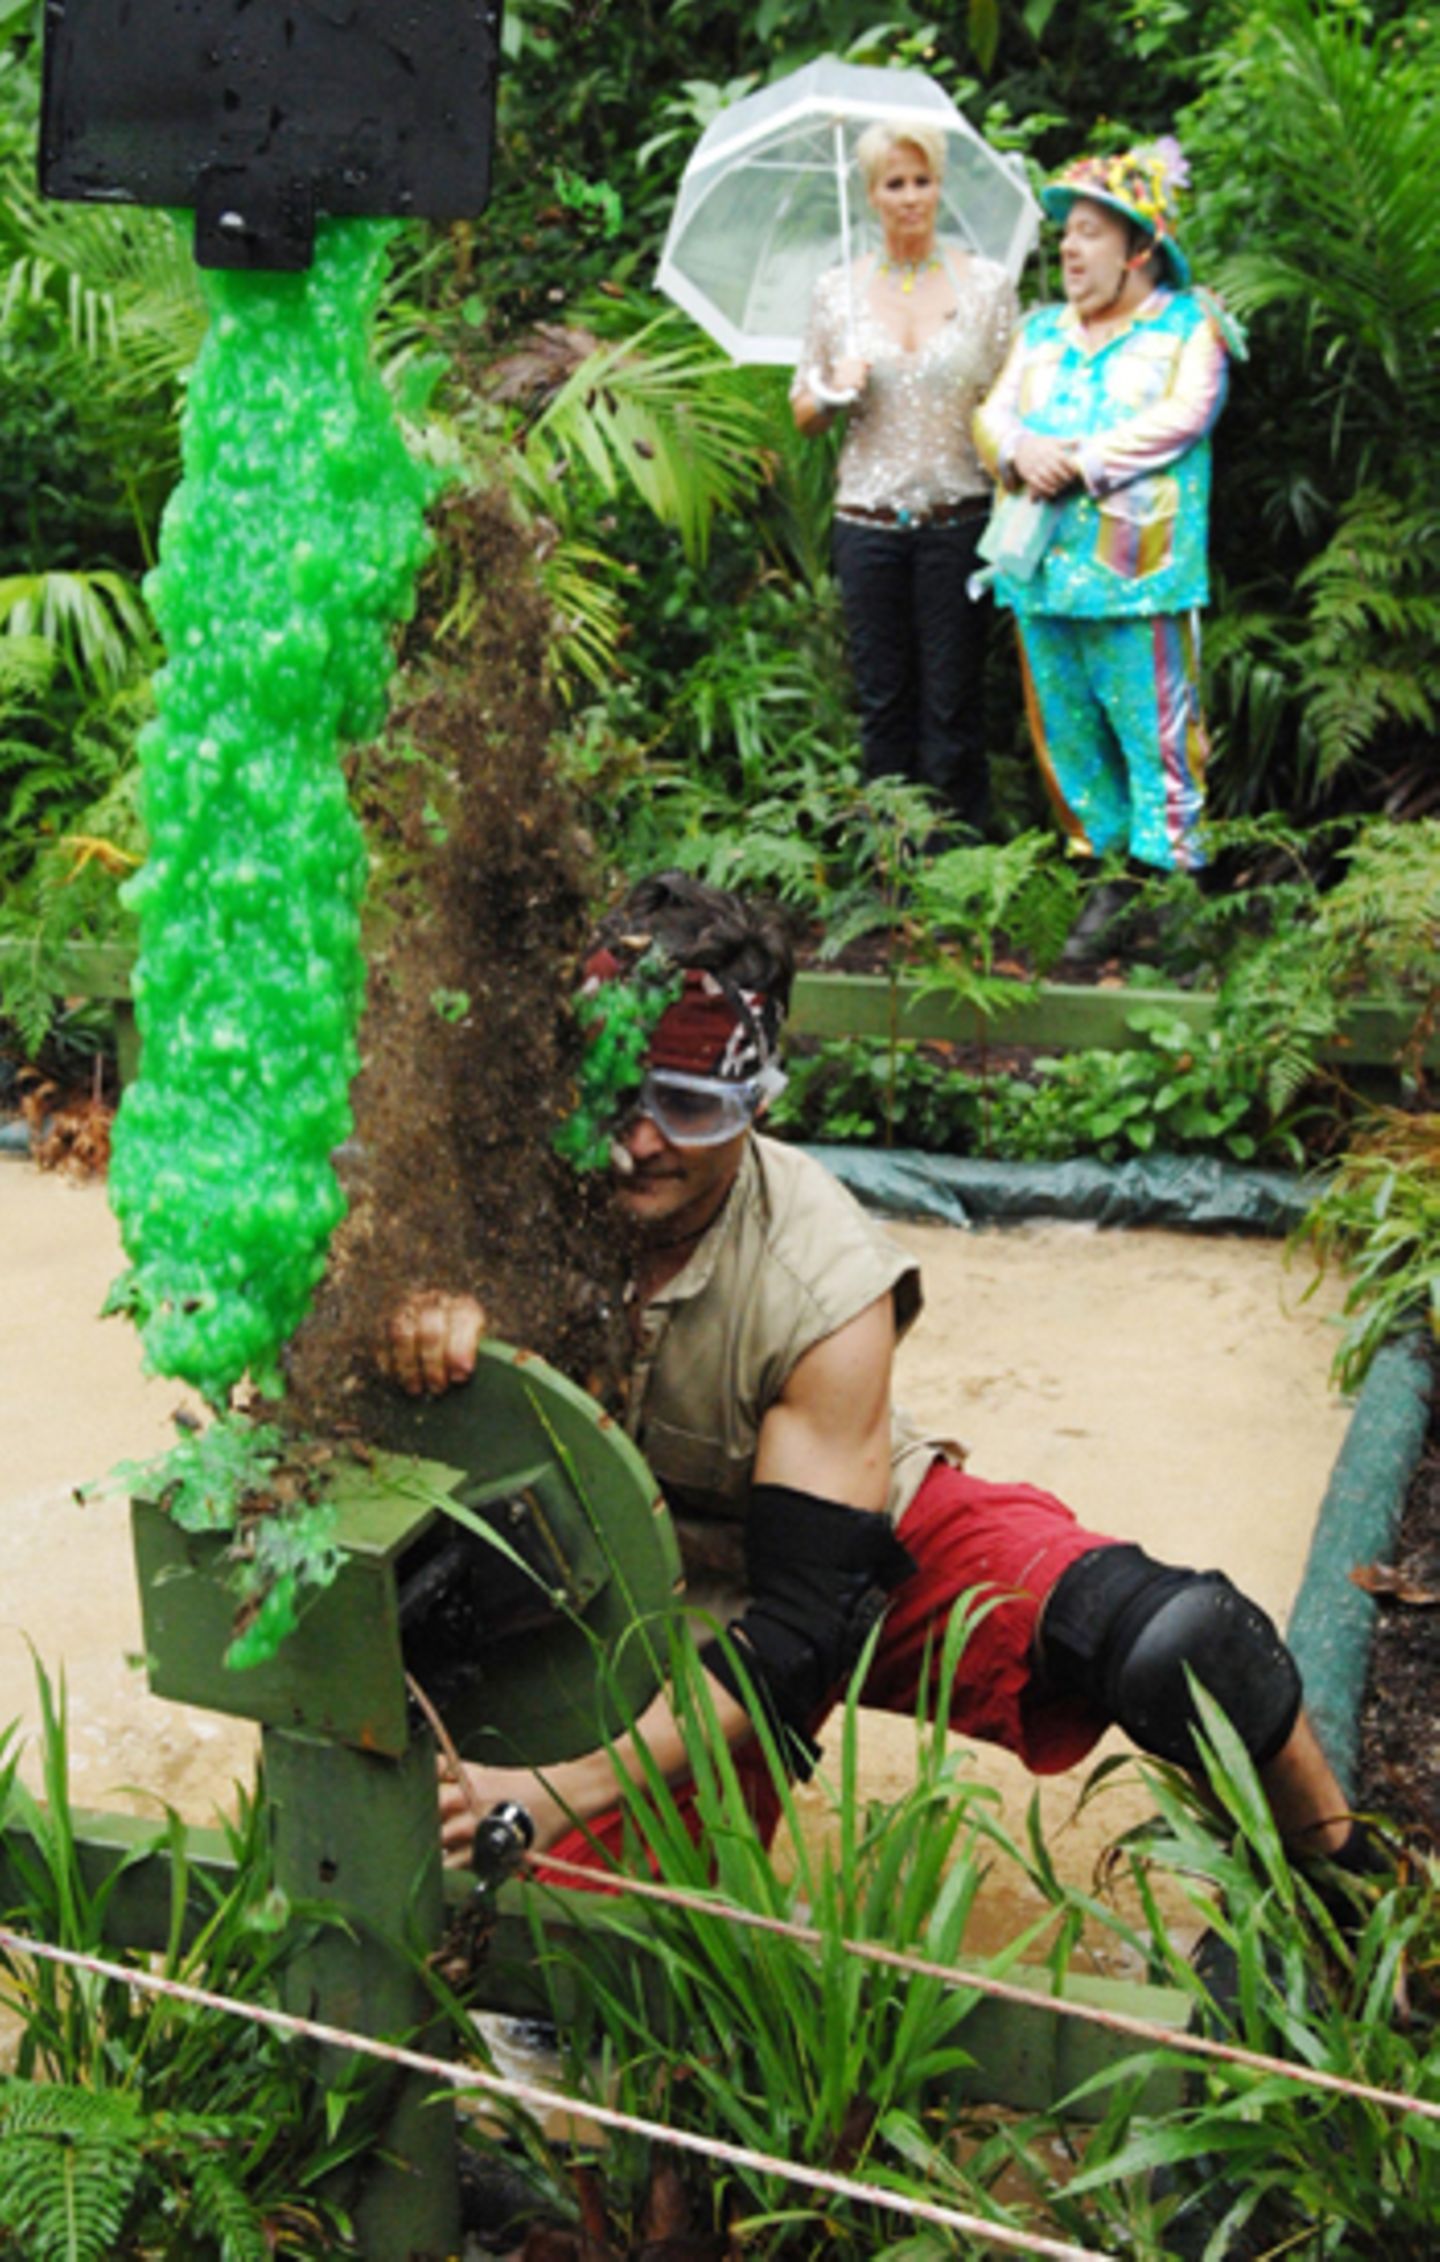 Bei der letzten Dschungelprüfung kämpfen die Finalisten um ein Drei-Gänge-Menü. Mit seinem Kampfgeiste beschert Rocco seinen Dam